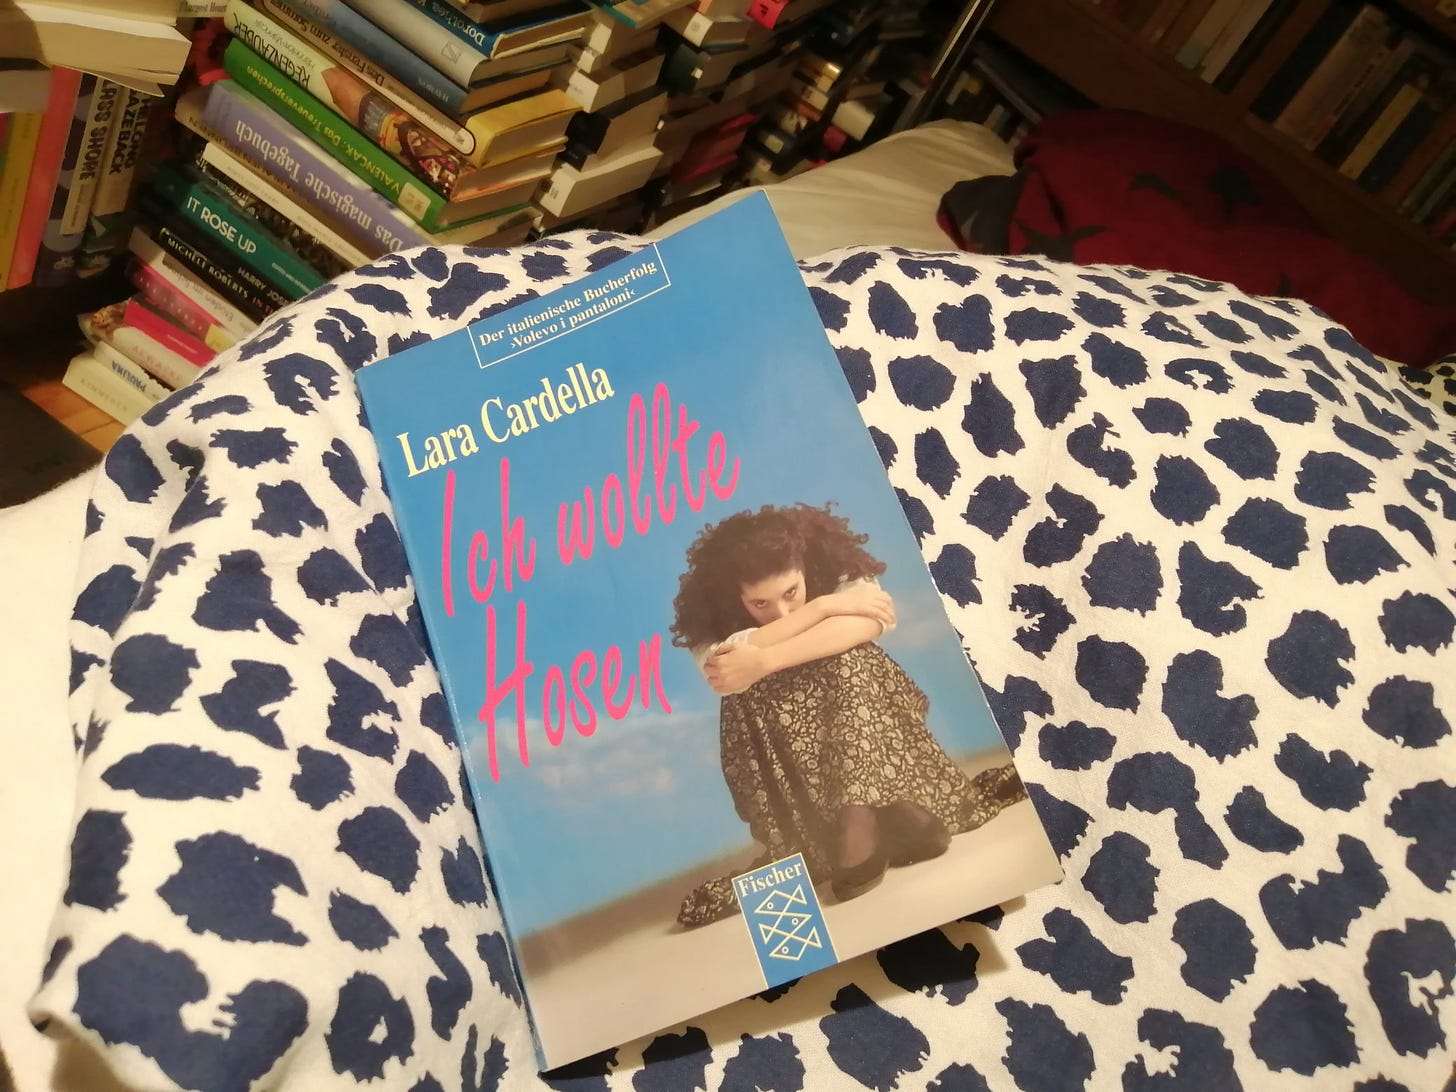 Das Buch "Ich wollte Hosen" von Lara Cardella